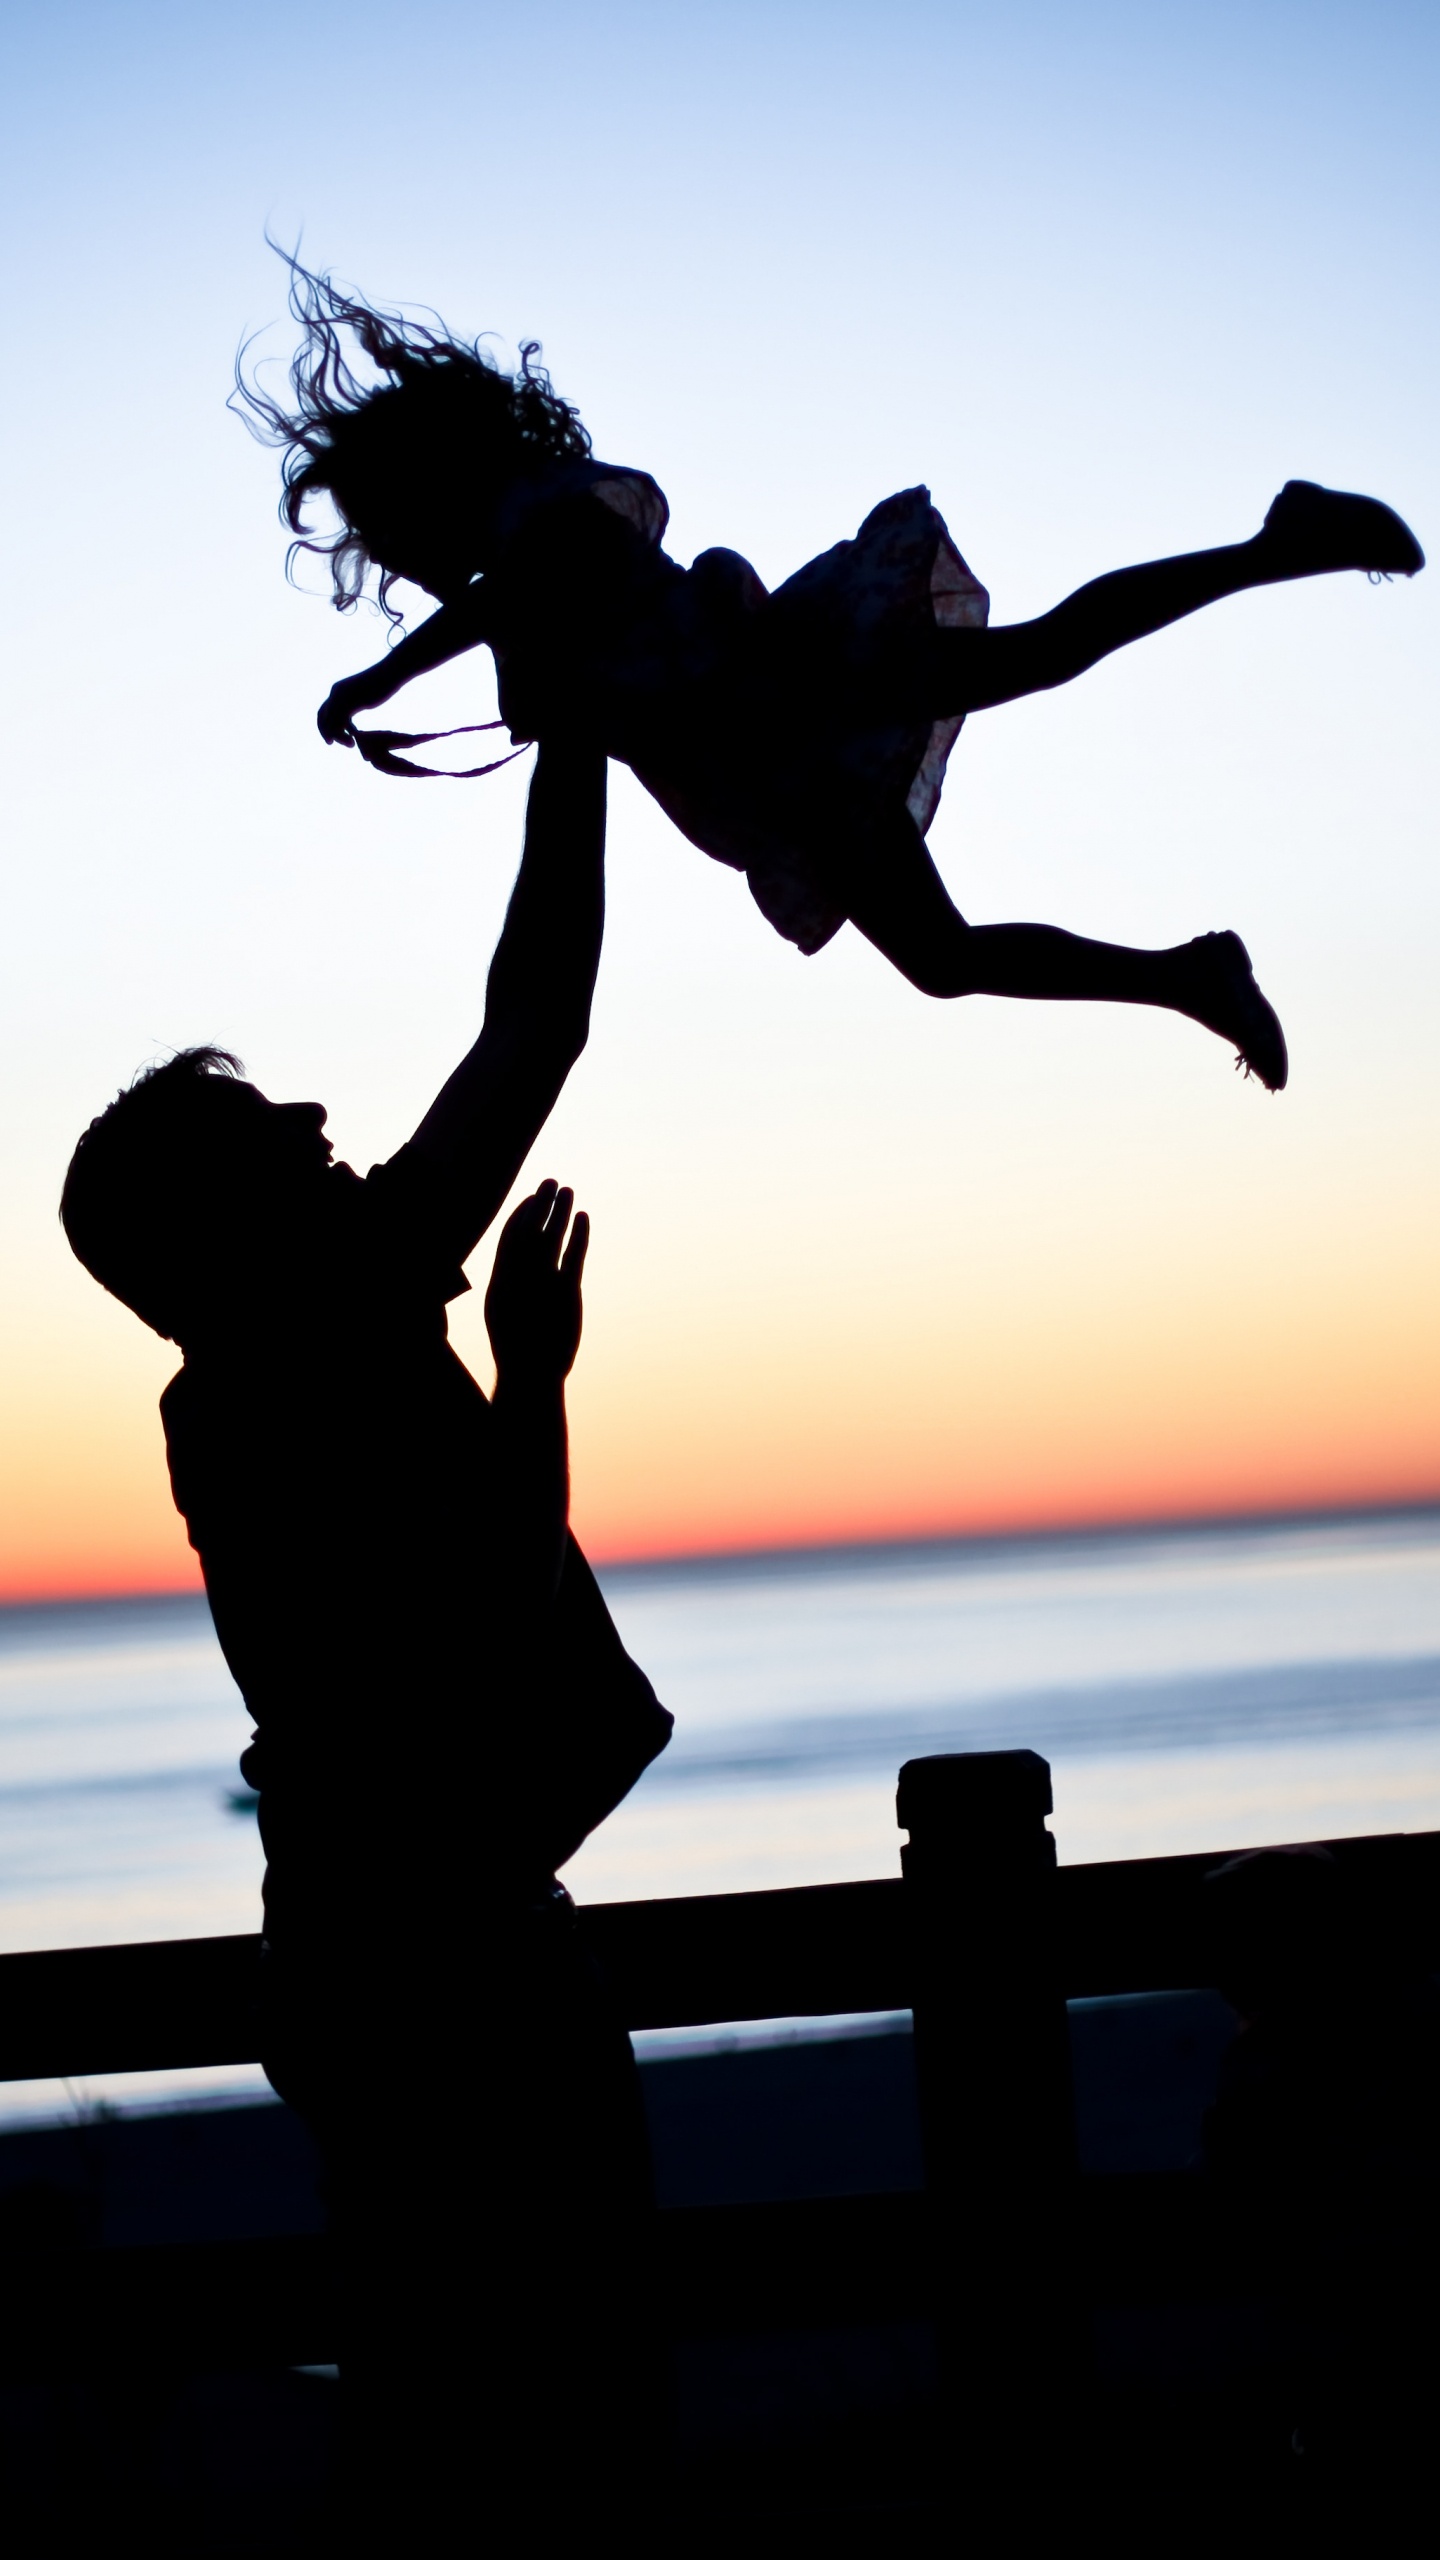 爸爸, 女儿, 家庭, 人们在自然界, 跳跃 壁纸 1440x2560 允许